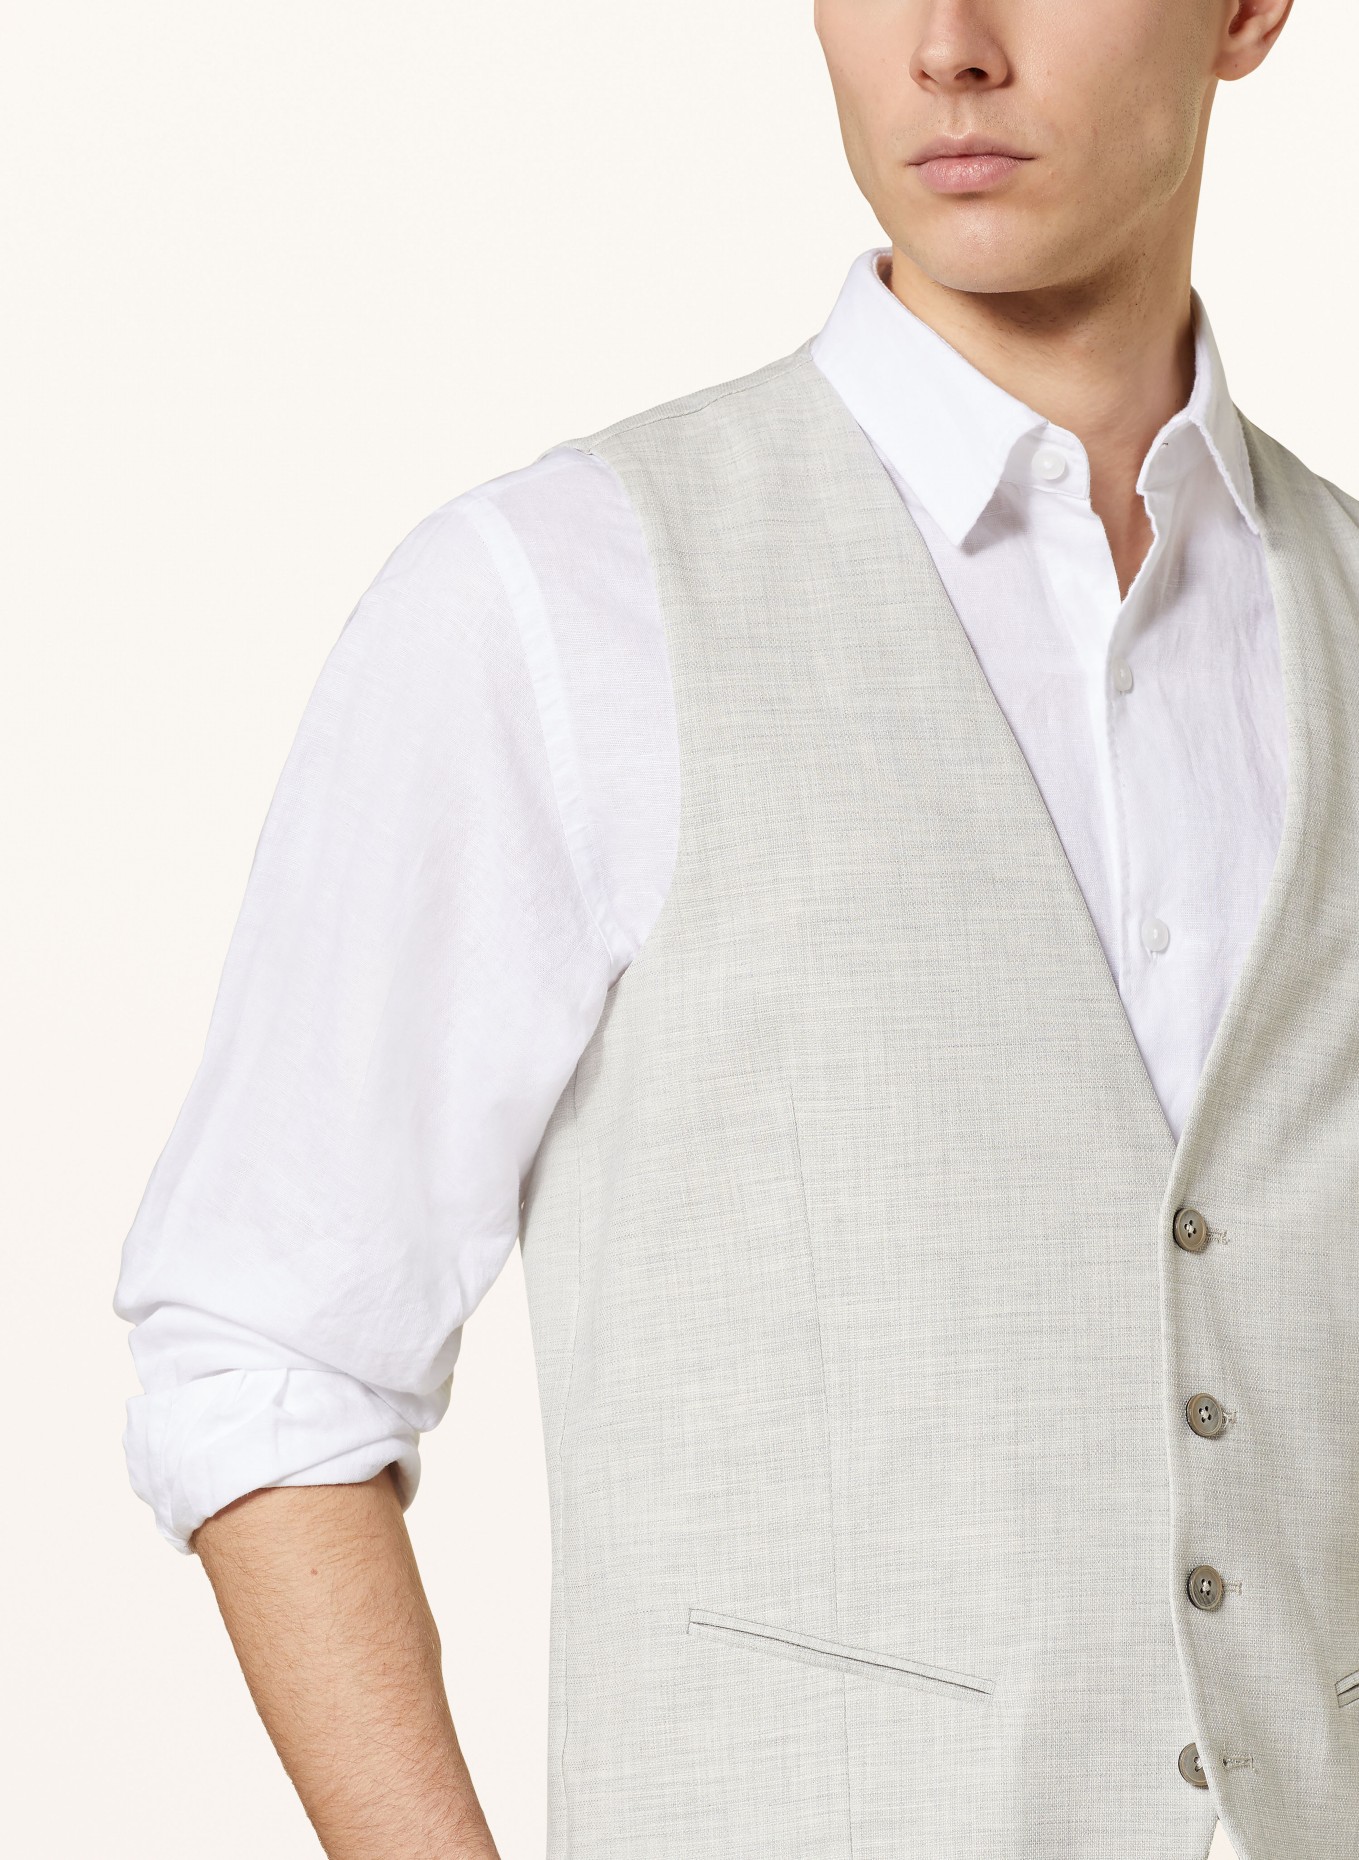 PAUL Suit vest extra slim fit, Color: LIGHT GRAY (Image 5)